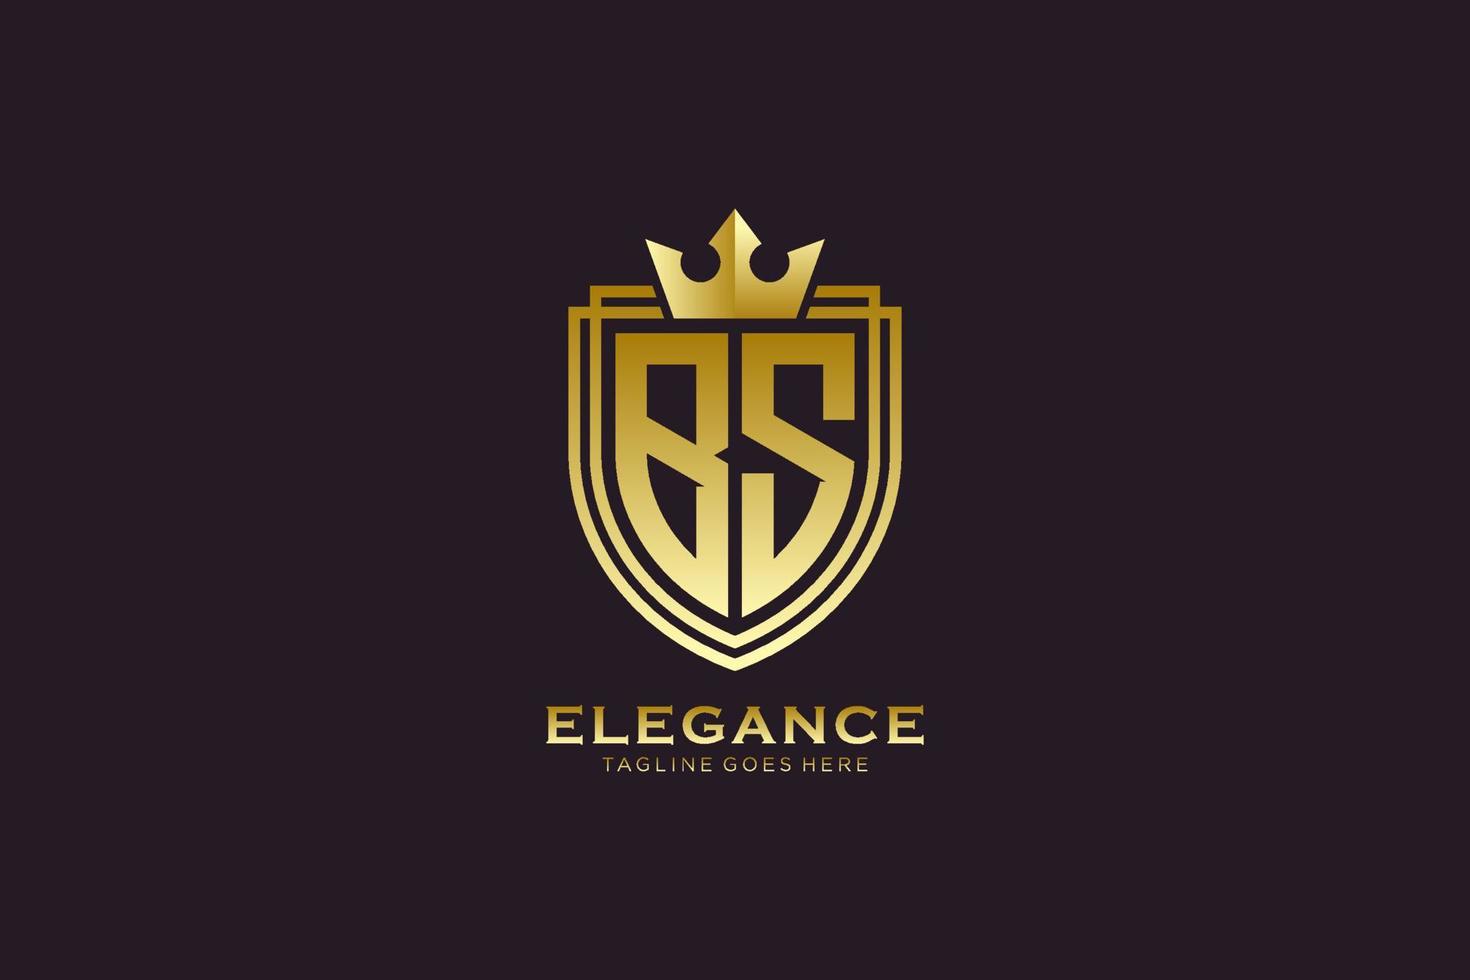 Initial bs elegantes Luxus-Monogramm-Logo oder Abzeichen-Vorlage mit Schriftrollen und Königskrone – perfekt für luxuriöse Branding-Projekte vektor